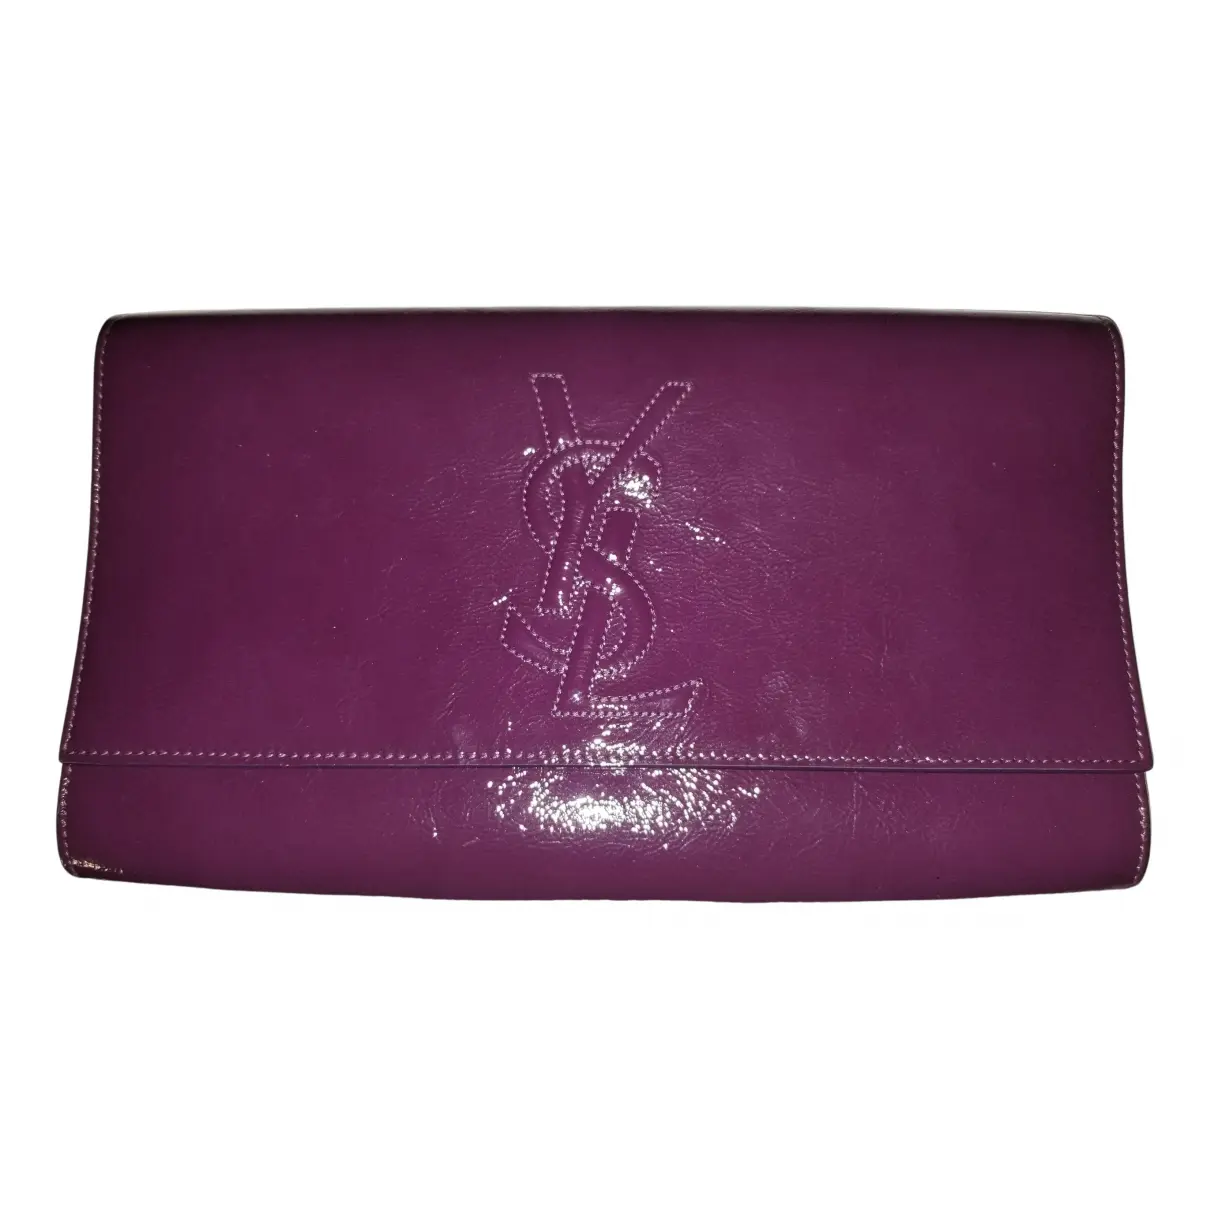 Belle de Jour patent leather clutch bag Yves Saint Laurent - Vintage